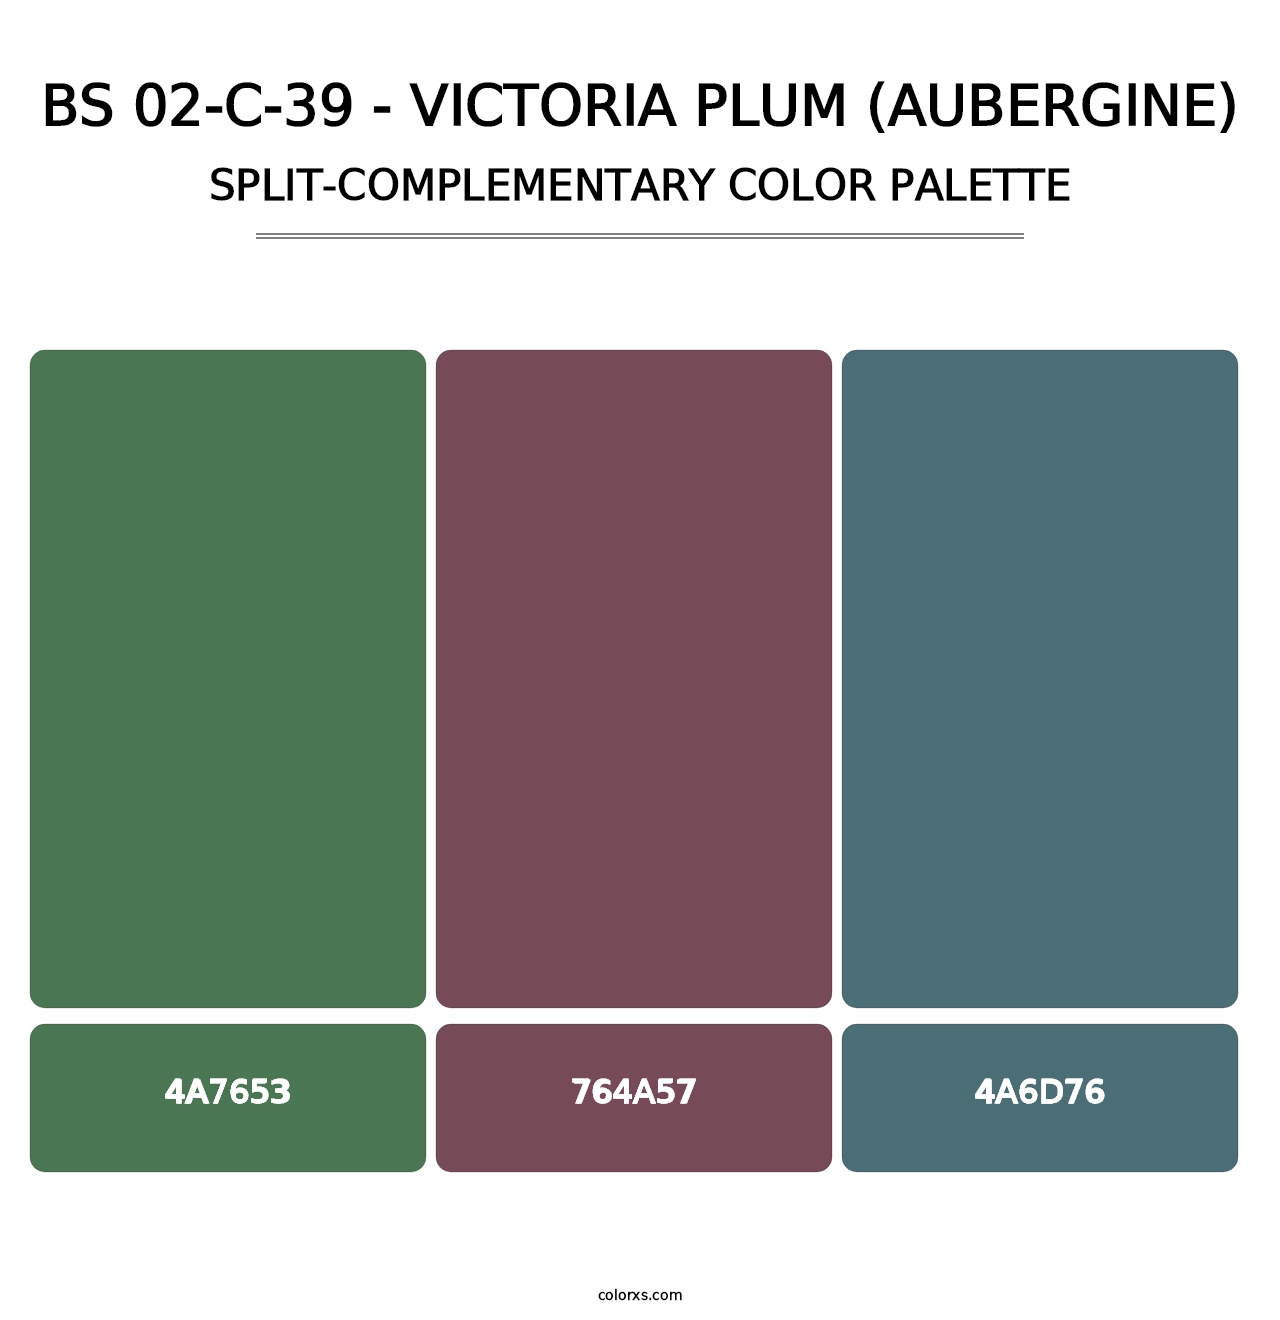 BS 02-C-39 - Victoria Plum (Aubergine) - Split-Complementary Color Palette